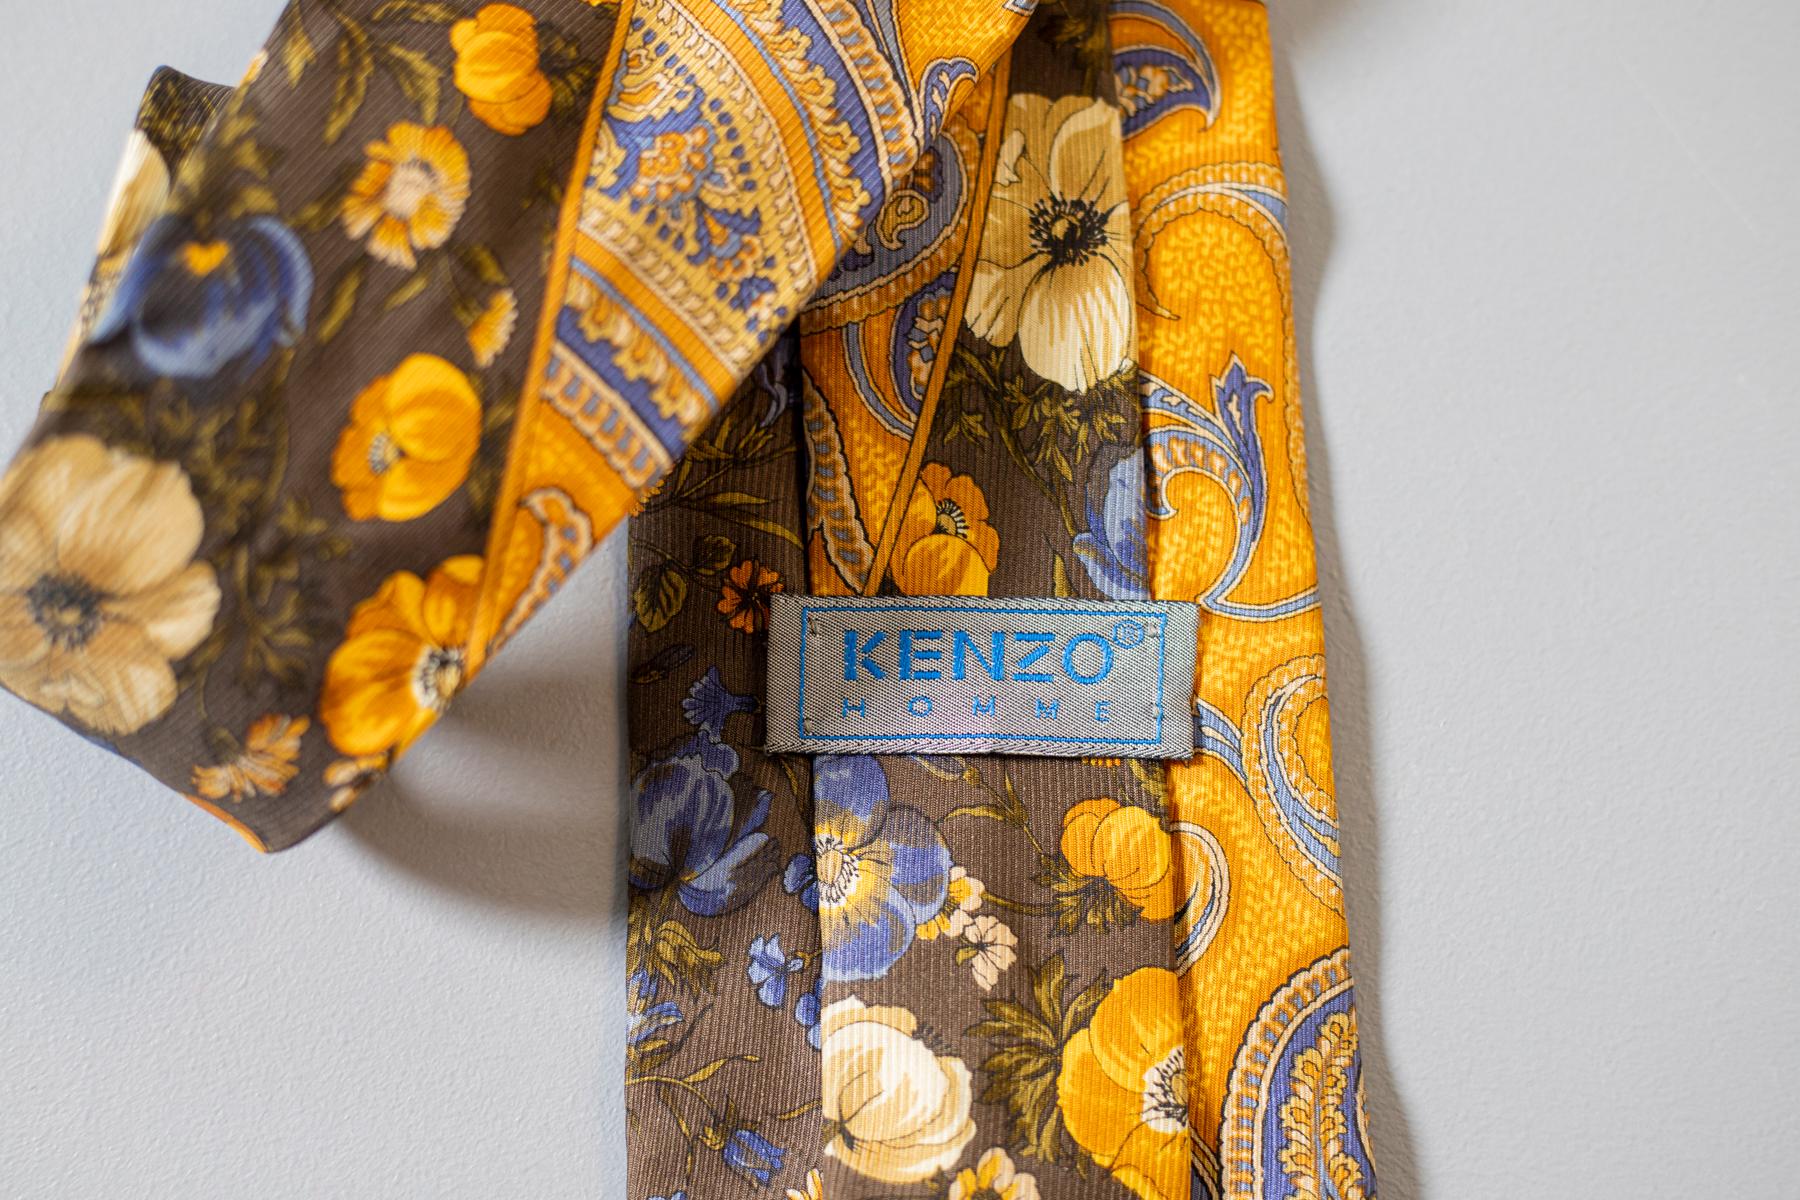 Cette cravate vintage tout en soie conçue par Kenzo pour sa collection Kenzo Homme est tout simplement magnifique. Divisée en deux parties, une jaune décorée d'un motif cachemire et une plus foncée ornée de fleurs colorées : cette cravate est